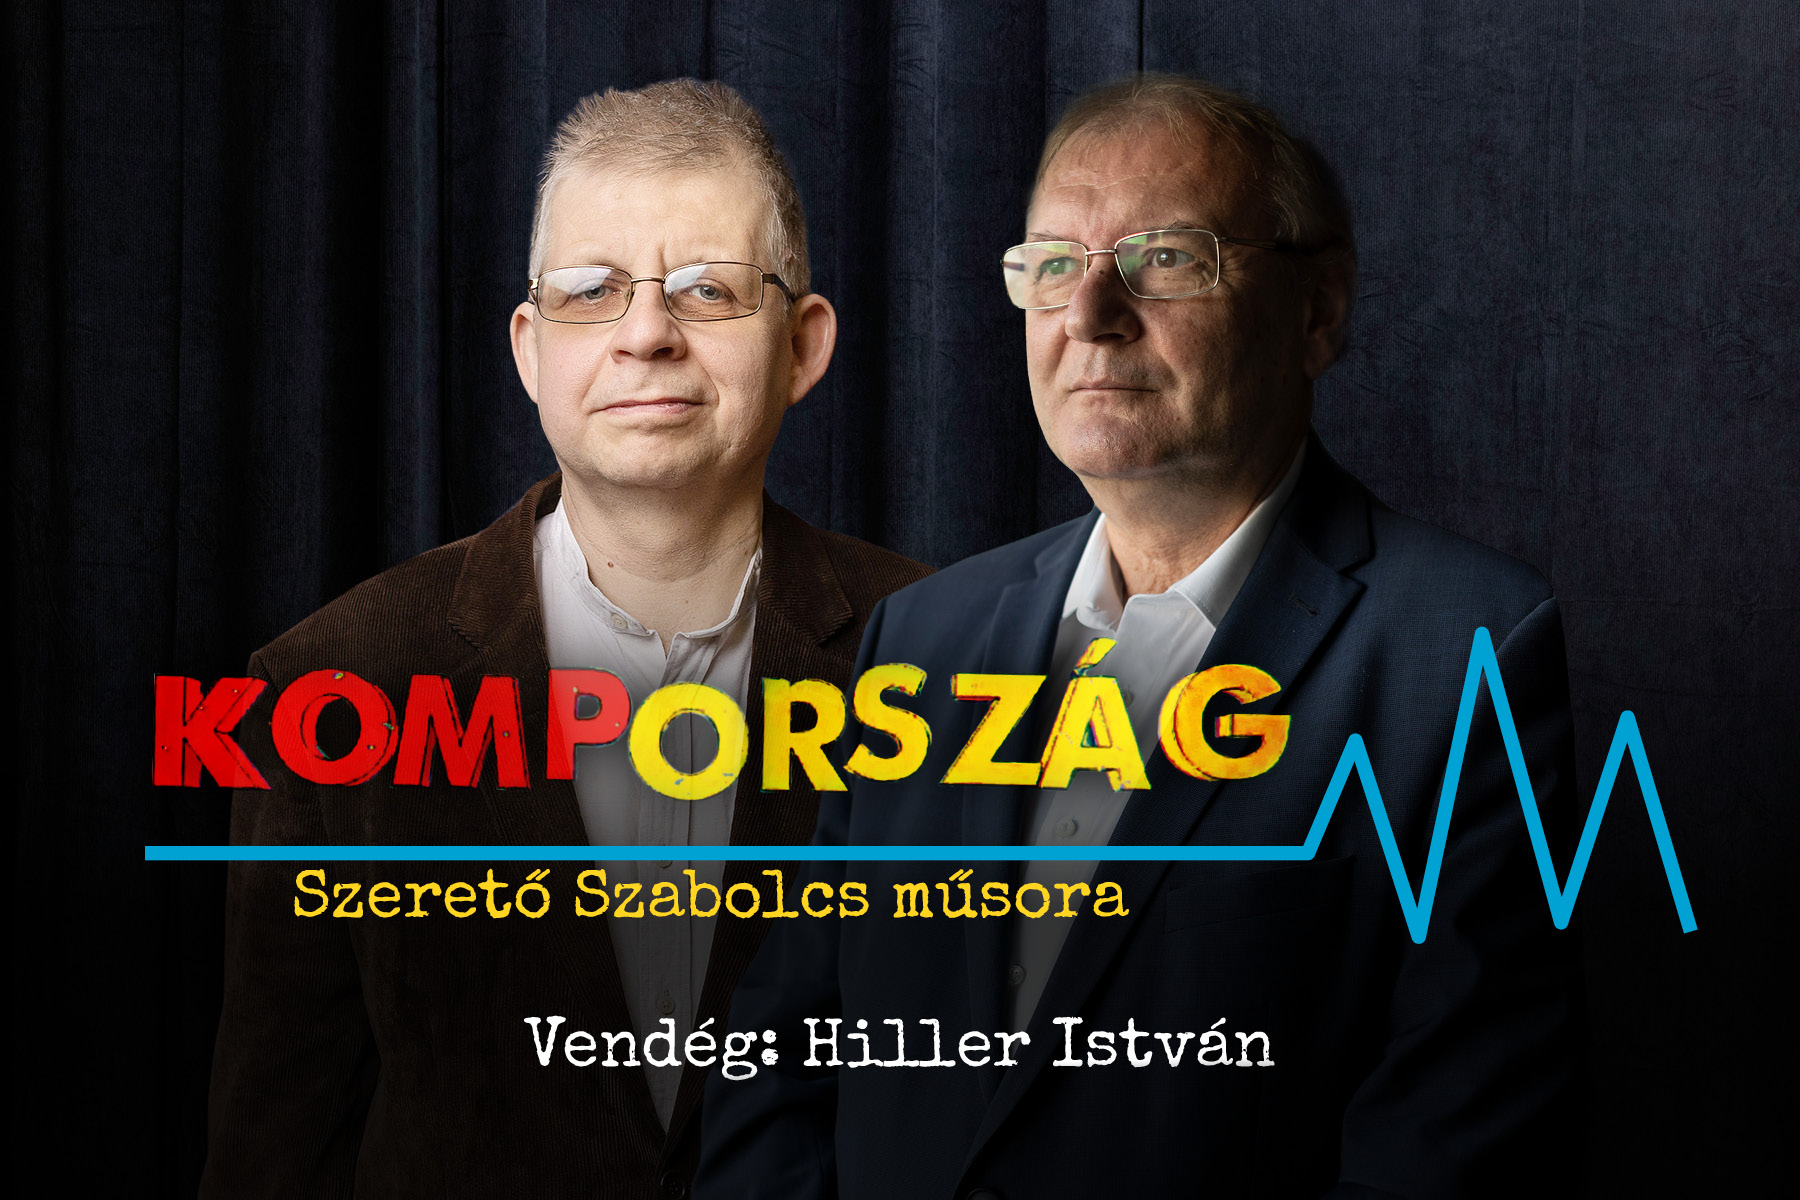 Hiller István: Iszonyú az ország mentális állapota, és ezért a Fidesz a felelős – Kompország